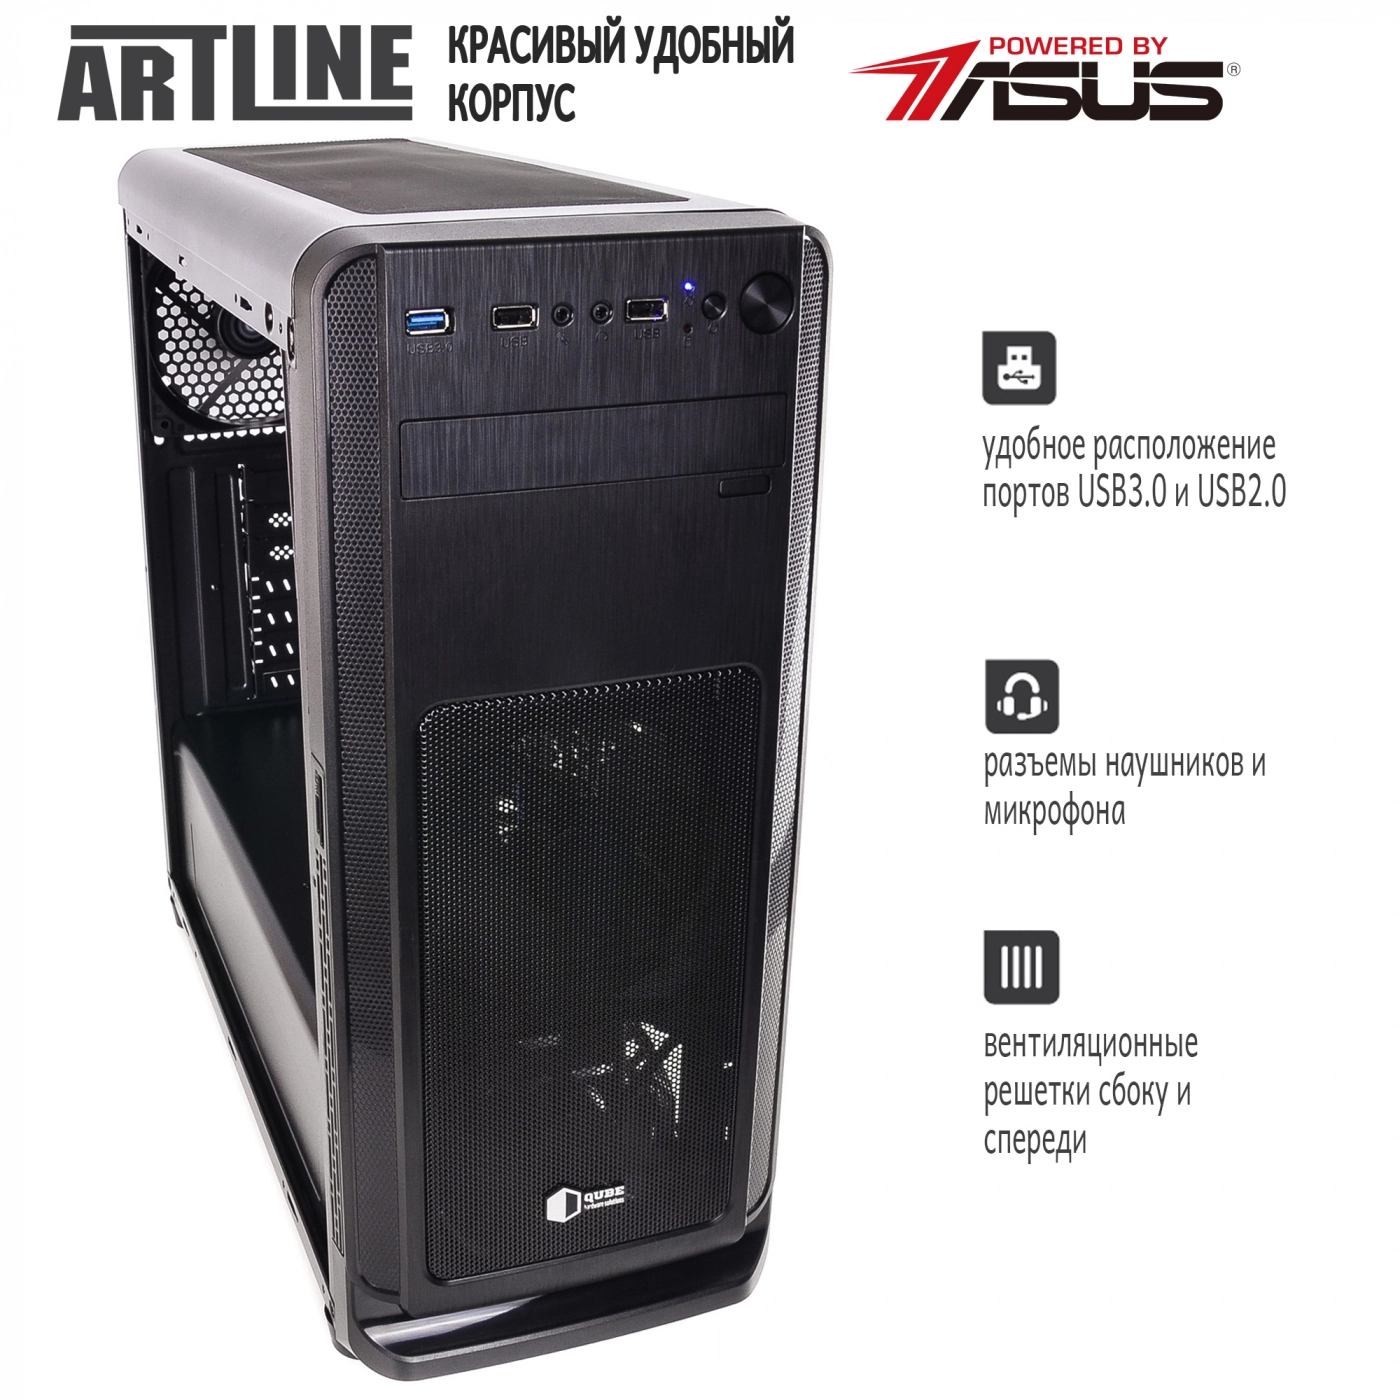 Купить Сервер ARTLINE Business T63v04 - фото 4